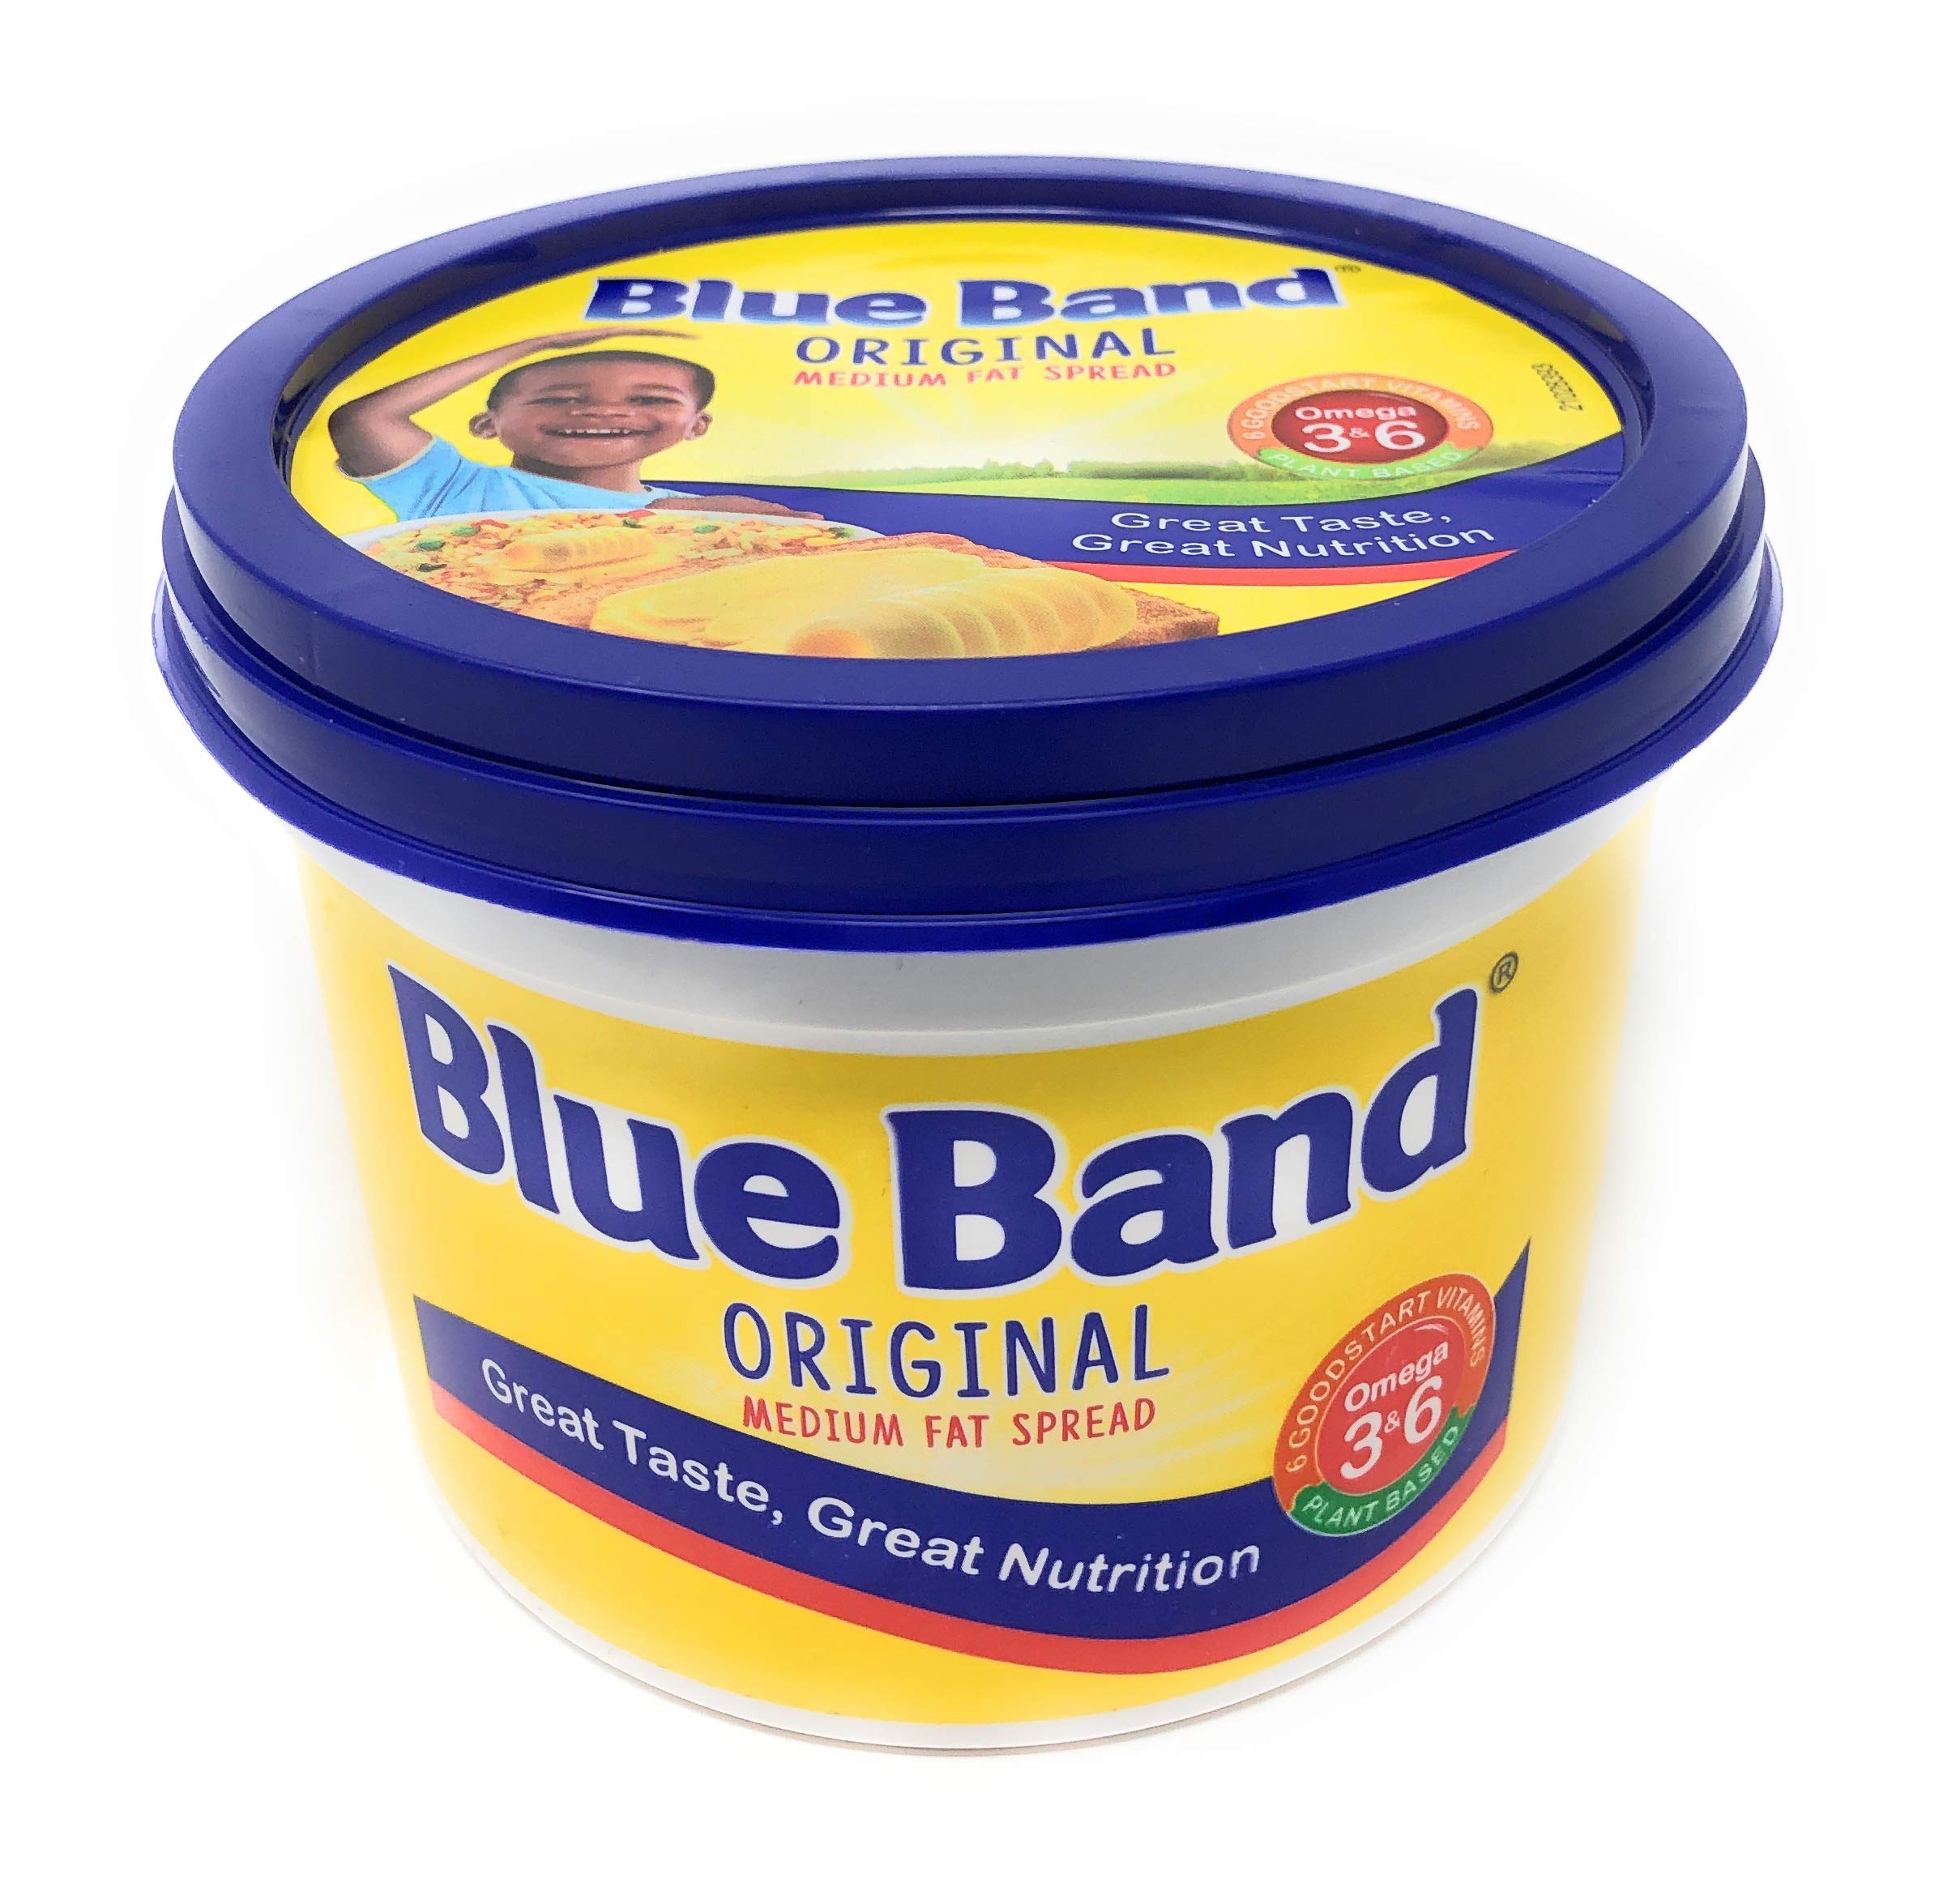 Blue band margarine